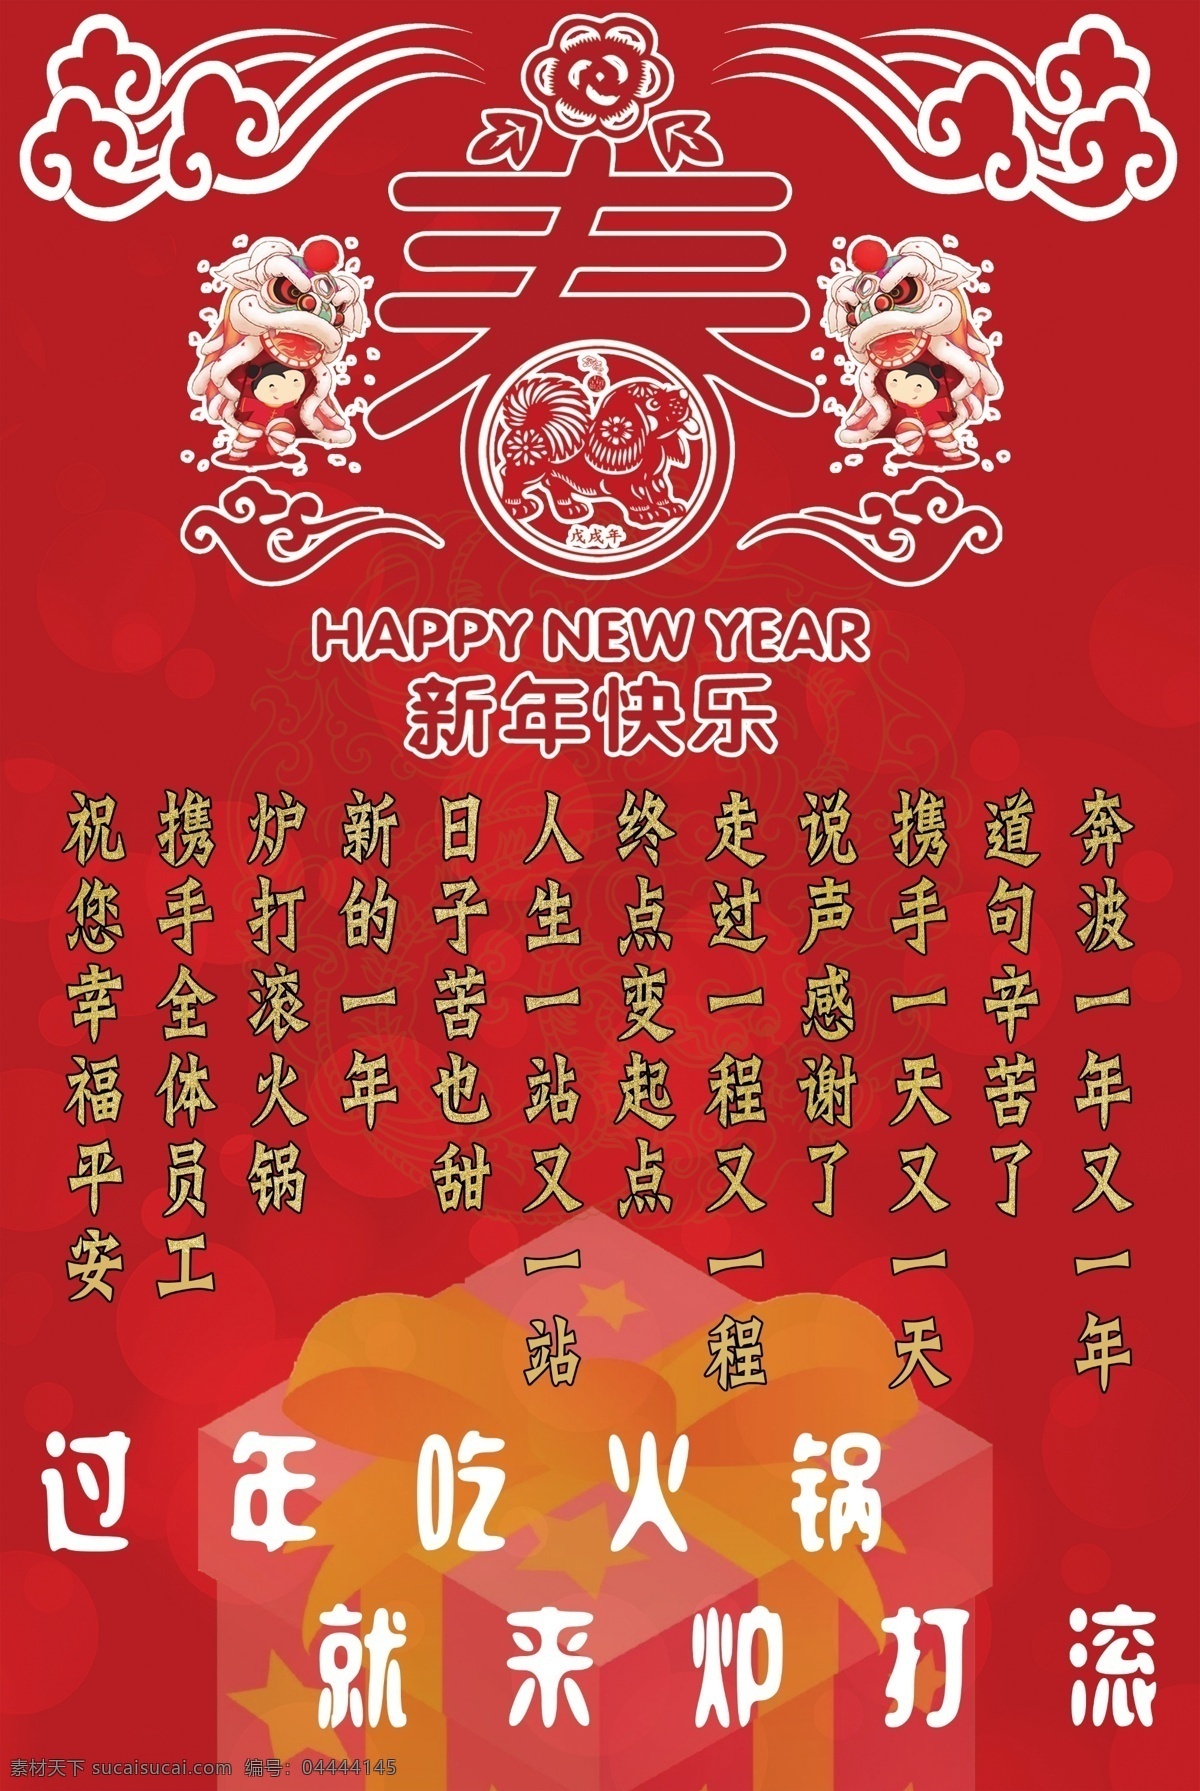 创意 红色 新年 快乐 祝福语 海报 新年快乐 促销海报 春节 感谢语 红色海报